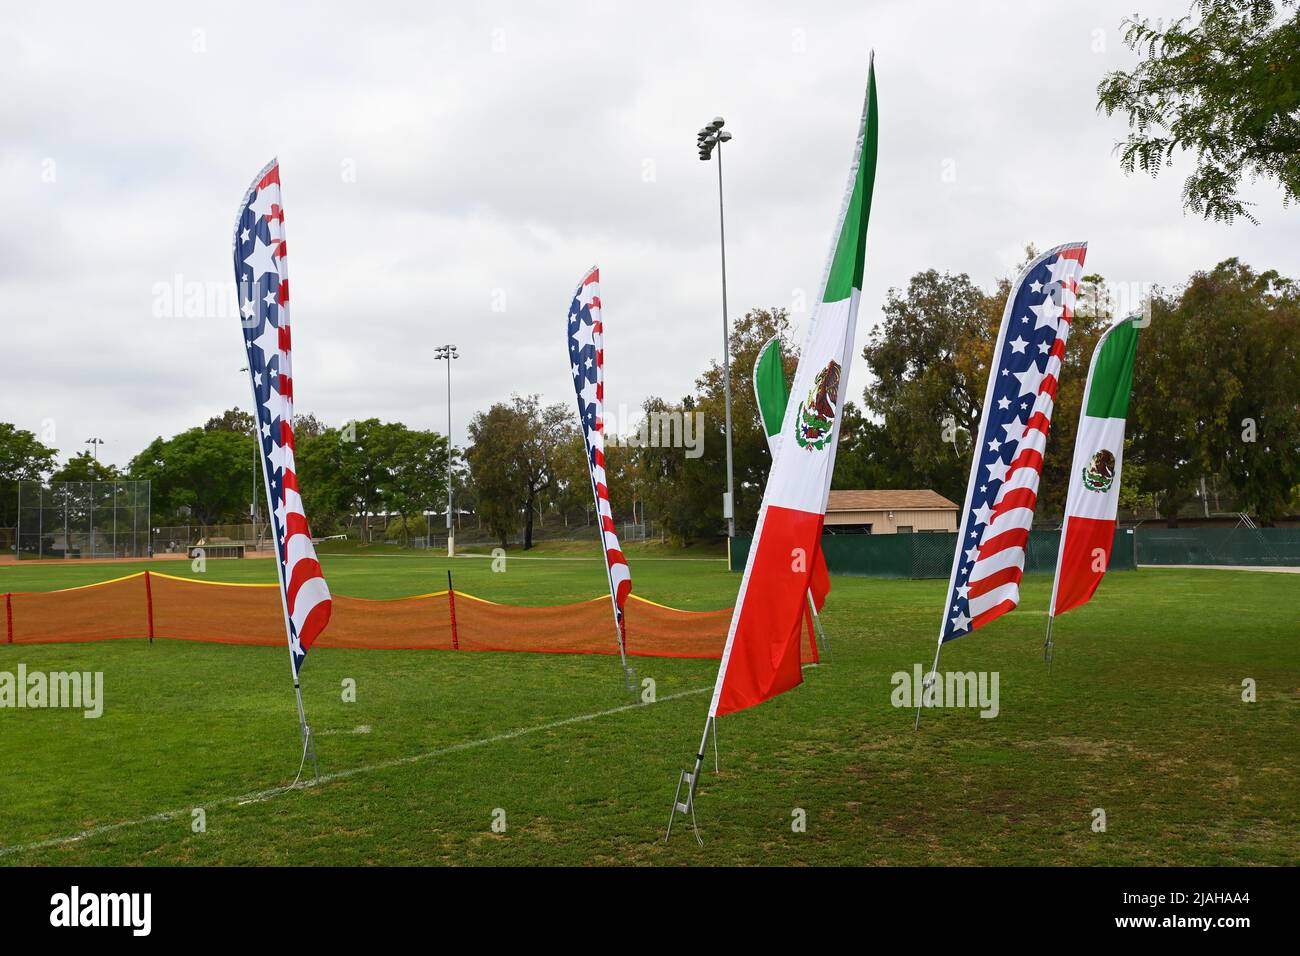 IRVINE, CALIFORNIA - 26 MAGGIO 2022: Striscioni con le bandiere degli Stati Uniti e del Messico per l'annuale Memorial Day Pony League Baseball Tournament A. Foto Stock